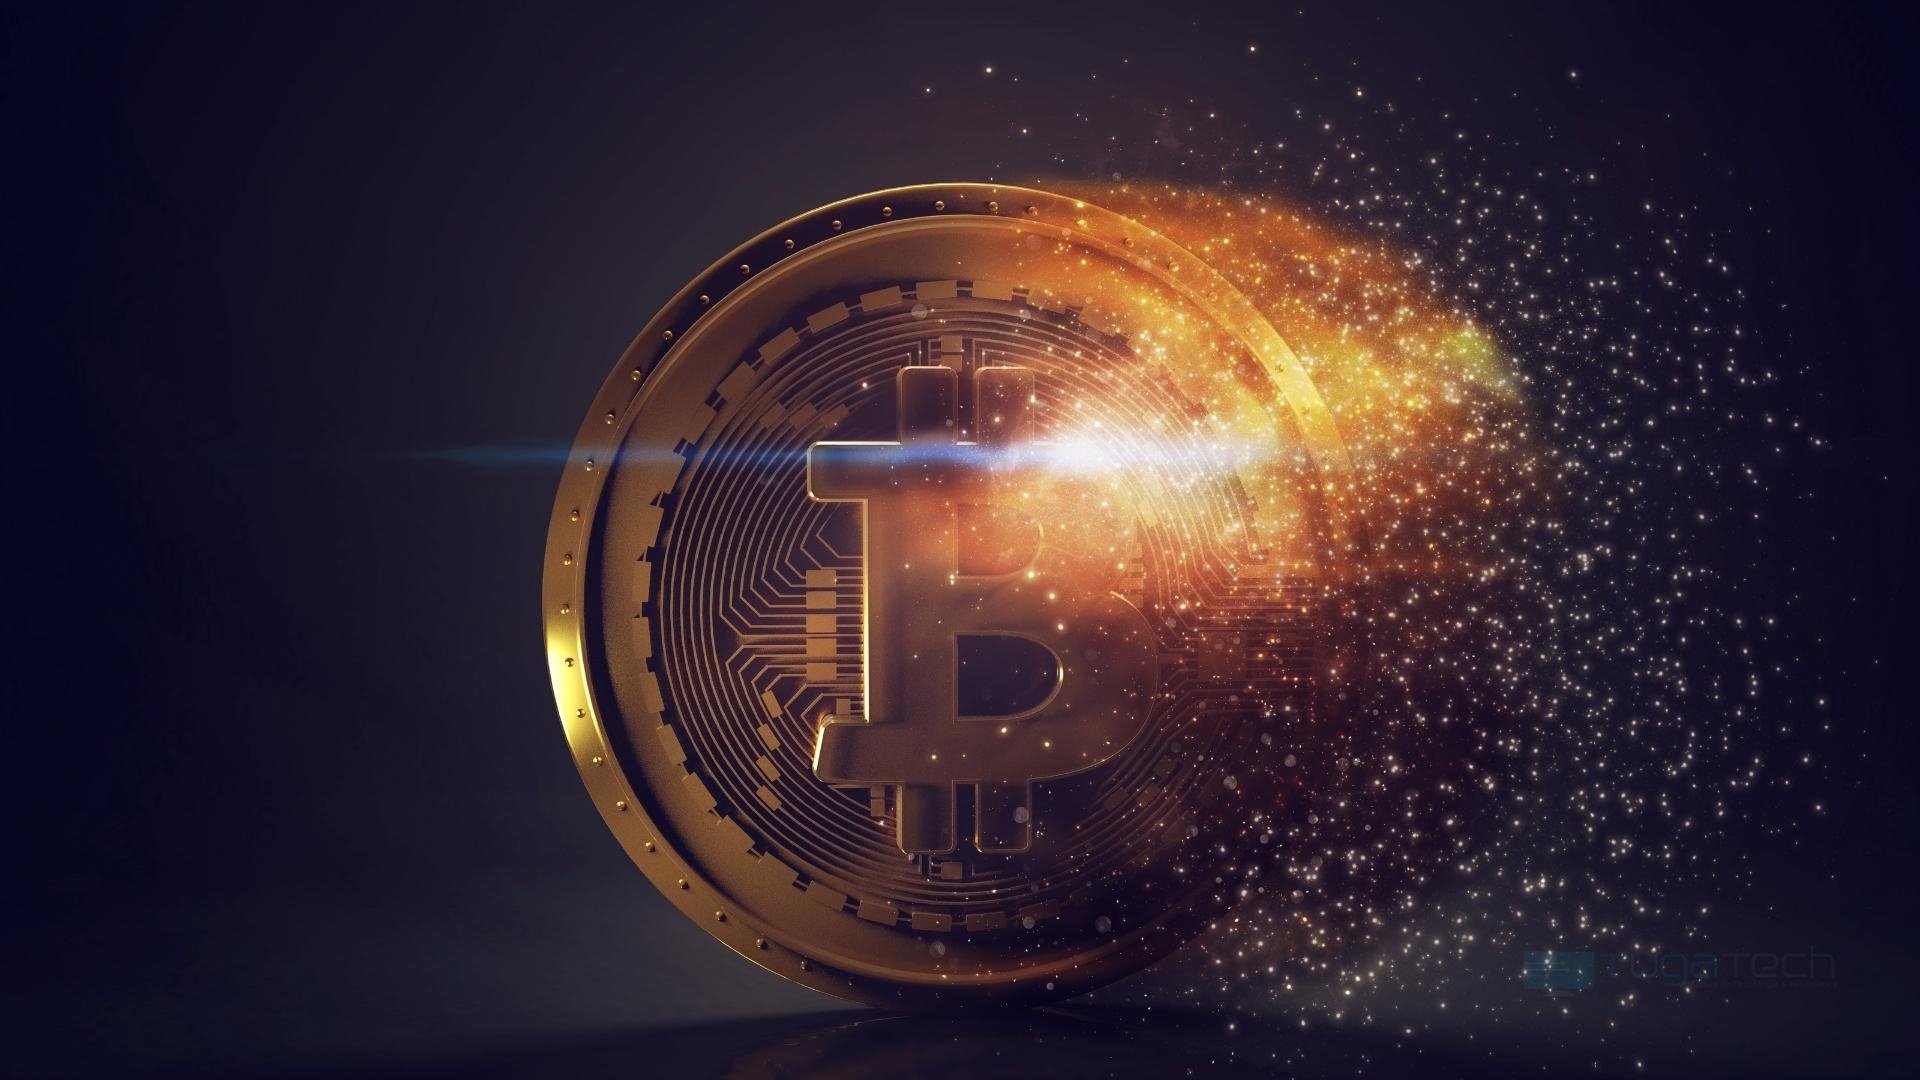 Bitcoin a ser destruido